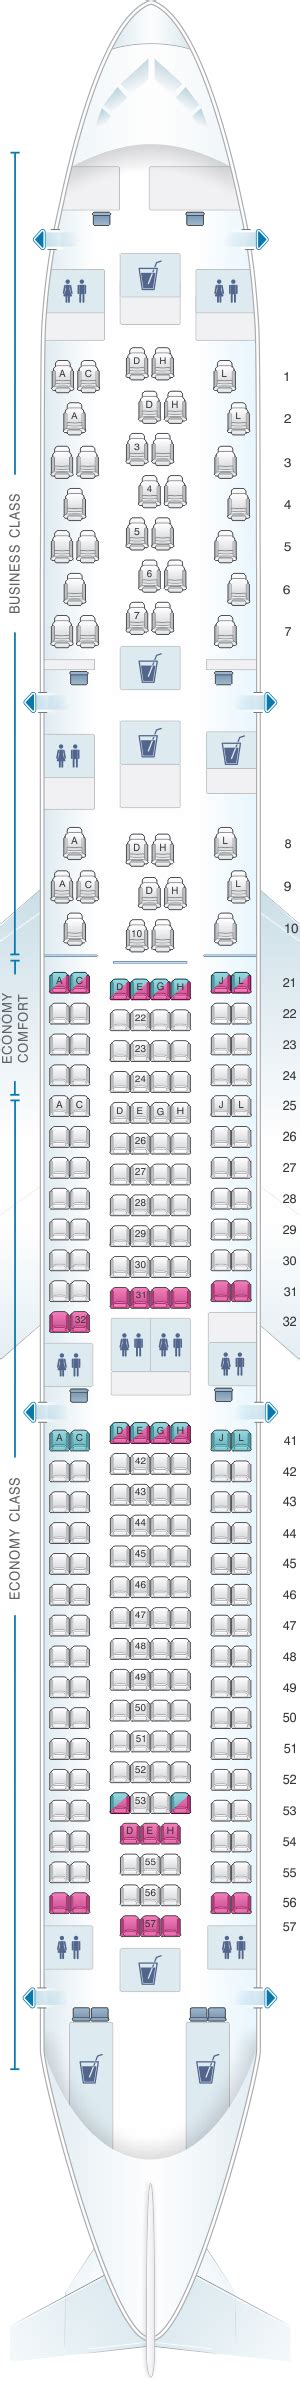 Seat Map Finnair Airbus A Pax Seatmaestro